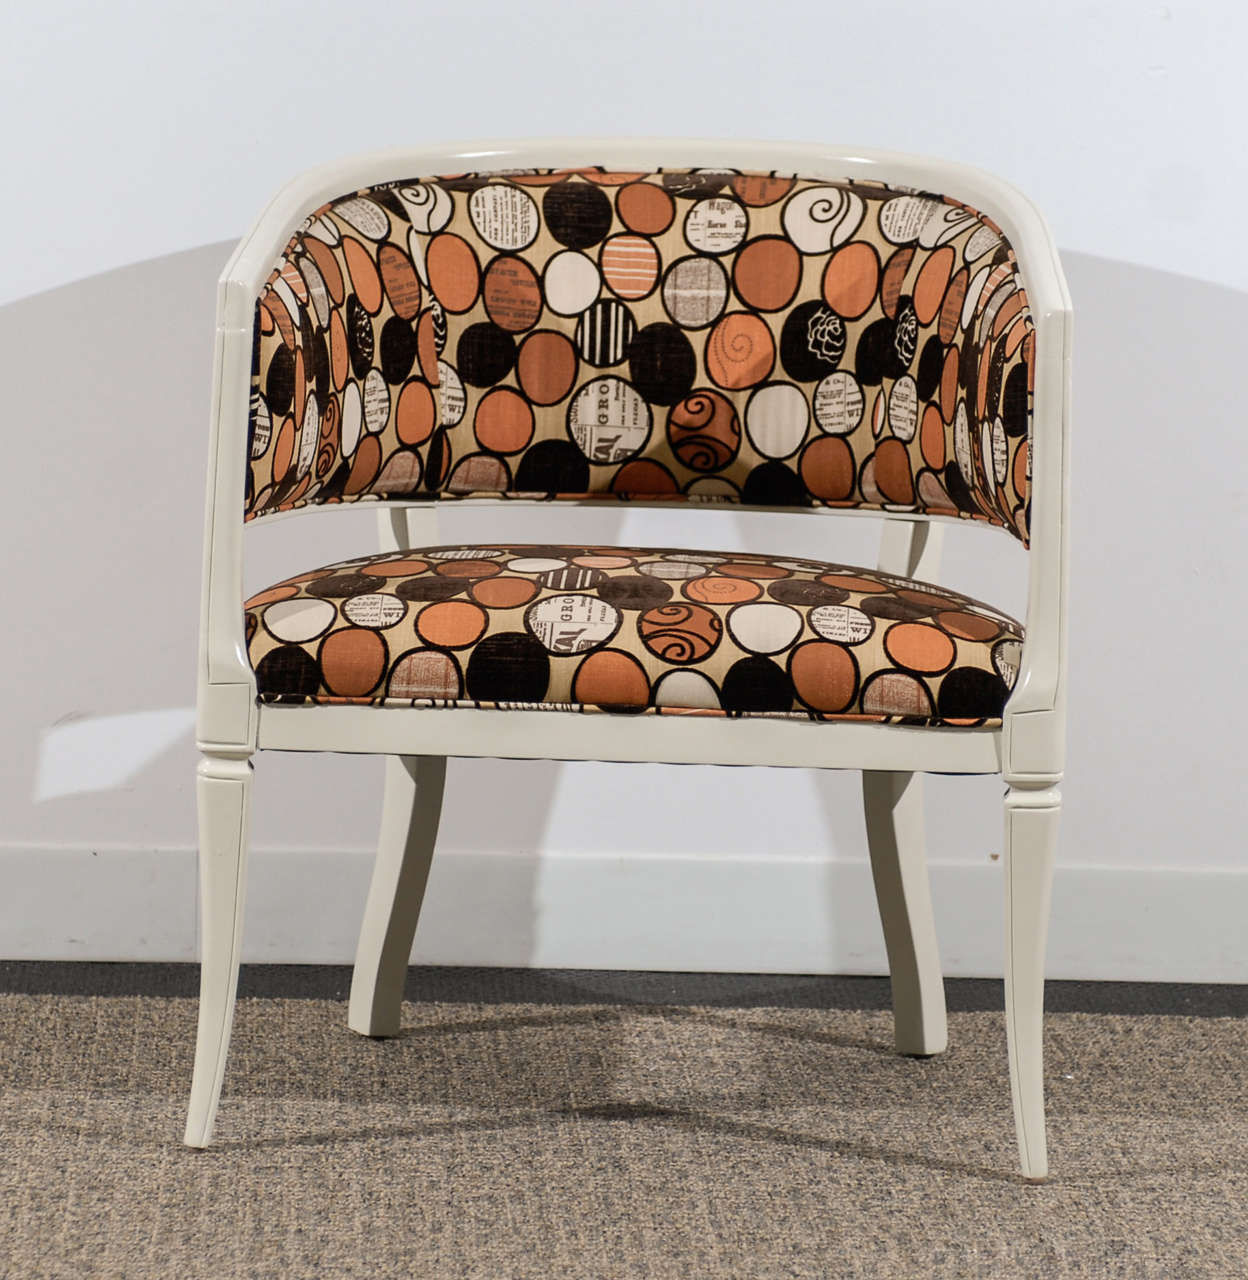 Ein stilvolles Paar Sessel. Obwohl die Stühle nicht gekennzeichnet sind, erinnern sie an die Baker-Produktion der späten 1960er Jahre. Ausgezeichneter restaurierter Zustand. Der angegebene Preis bezieht sich auf ein Paar Stühle. TOM ROBINSON MODERN